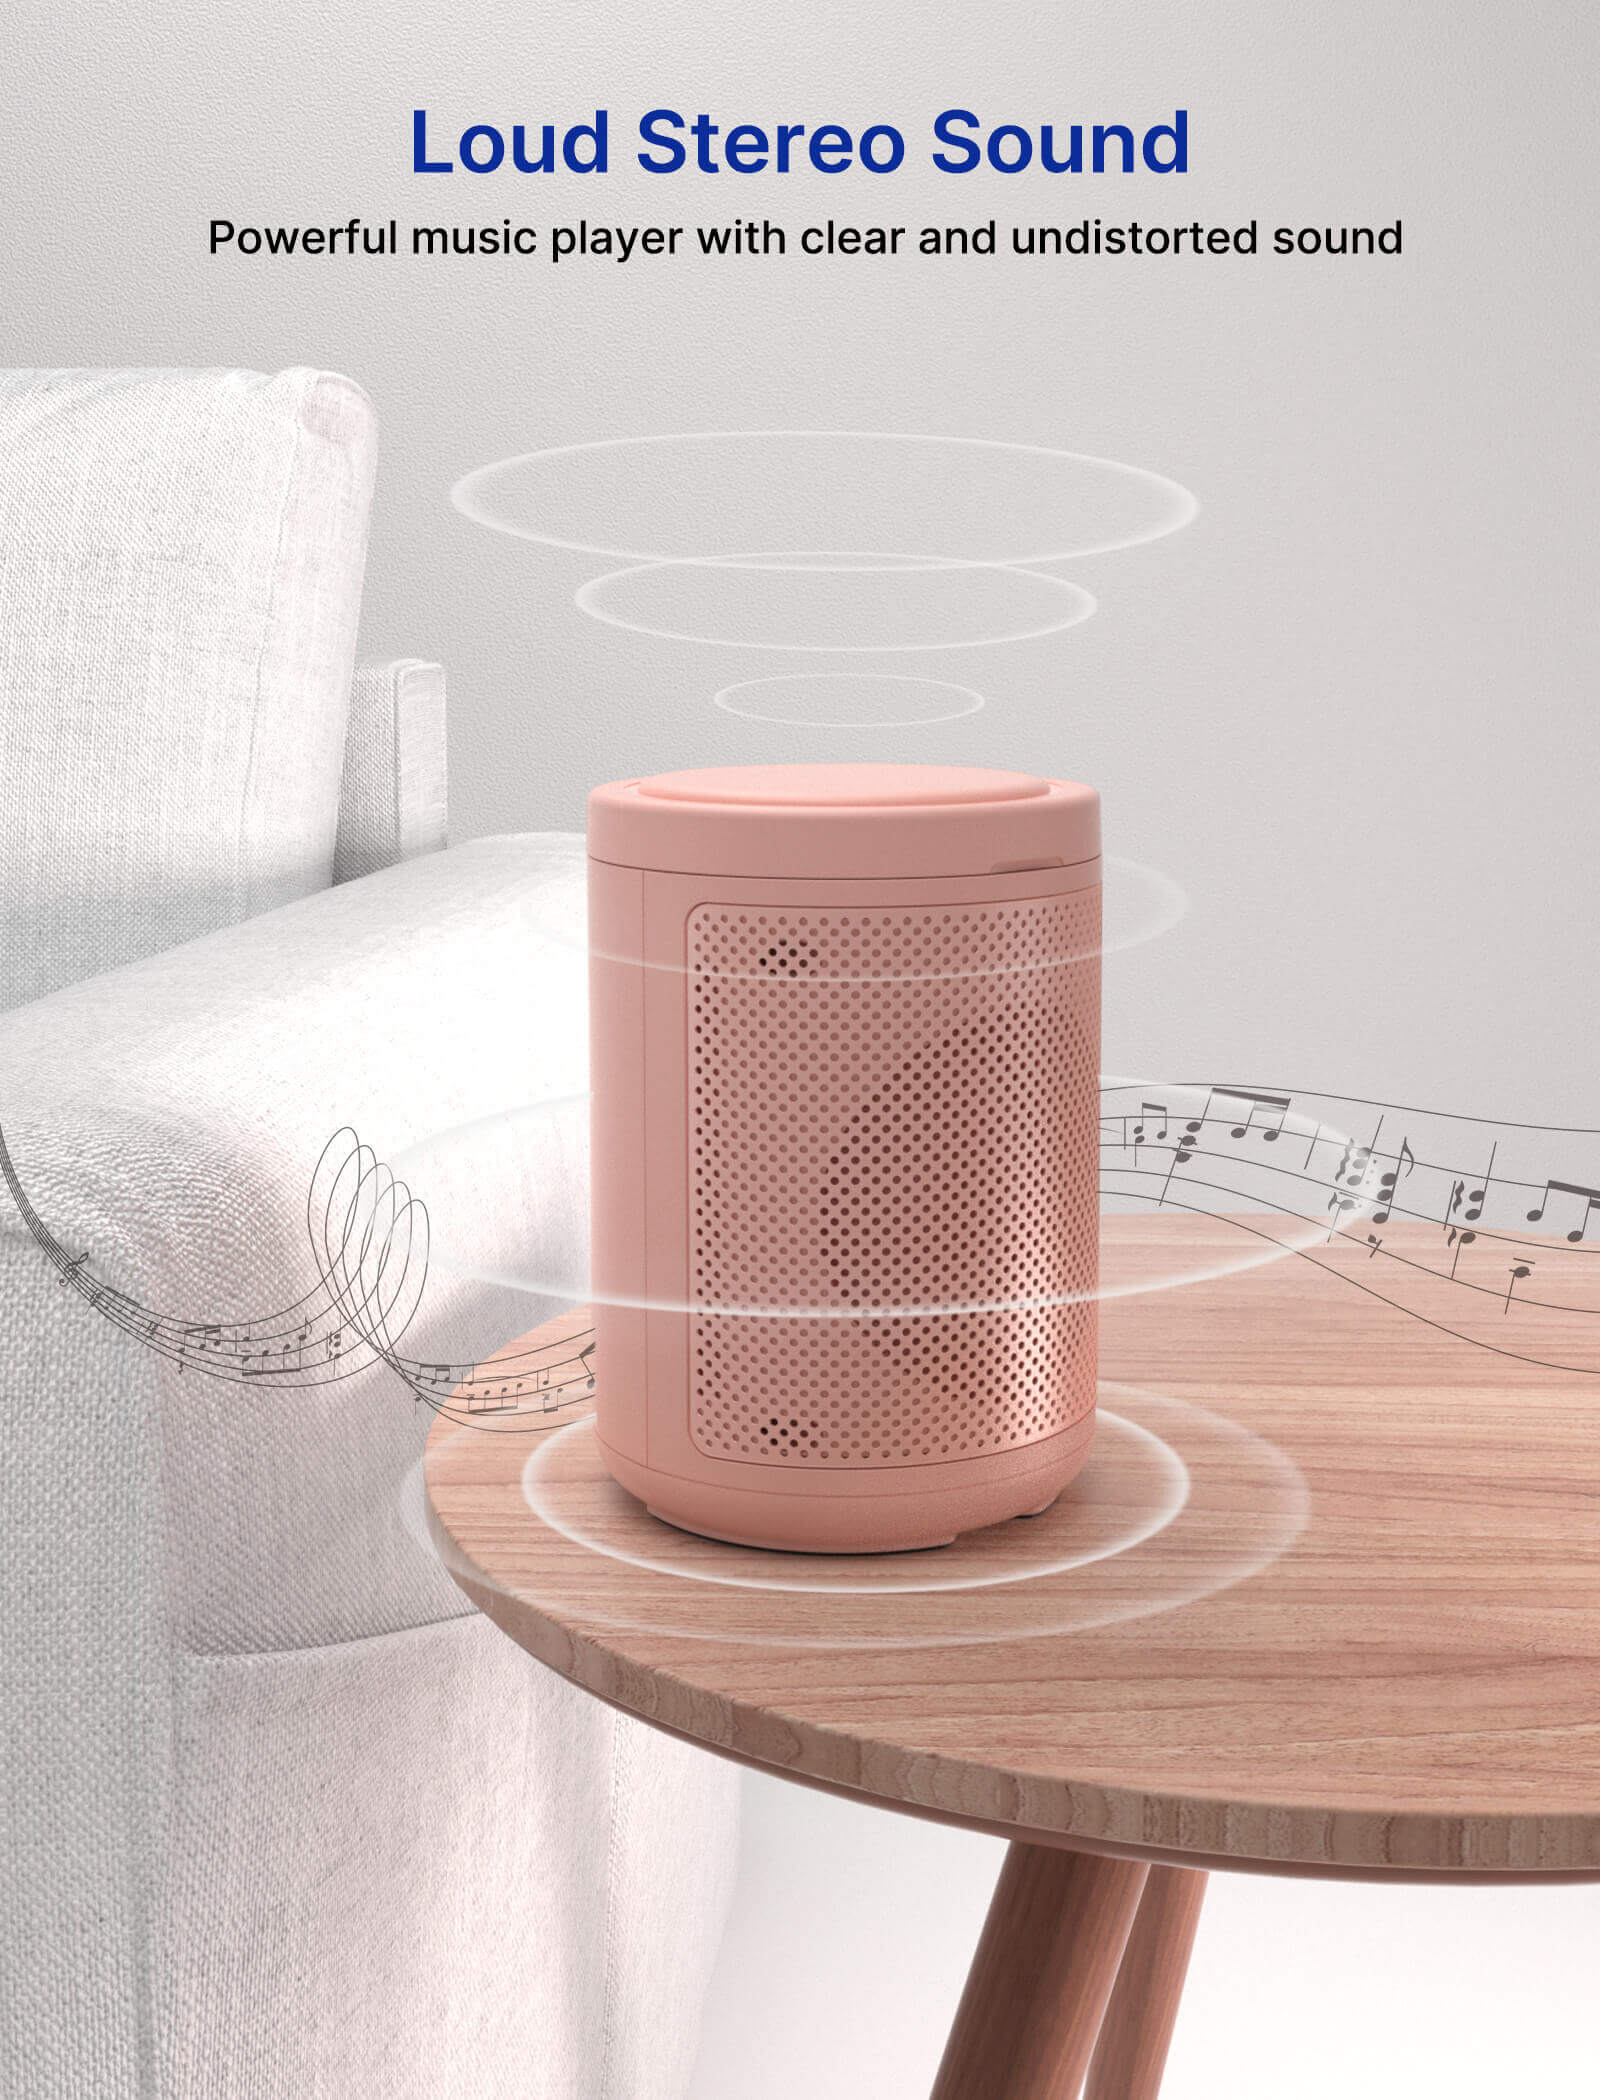 3-in-1 Portable Wireless Speaker #style_pink